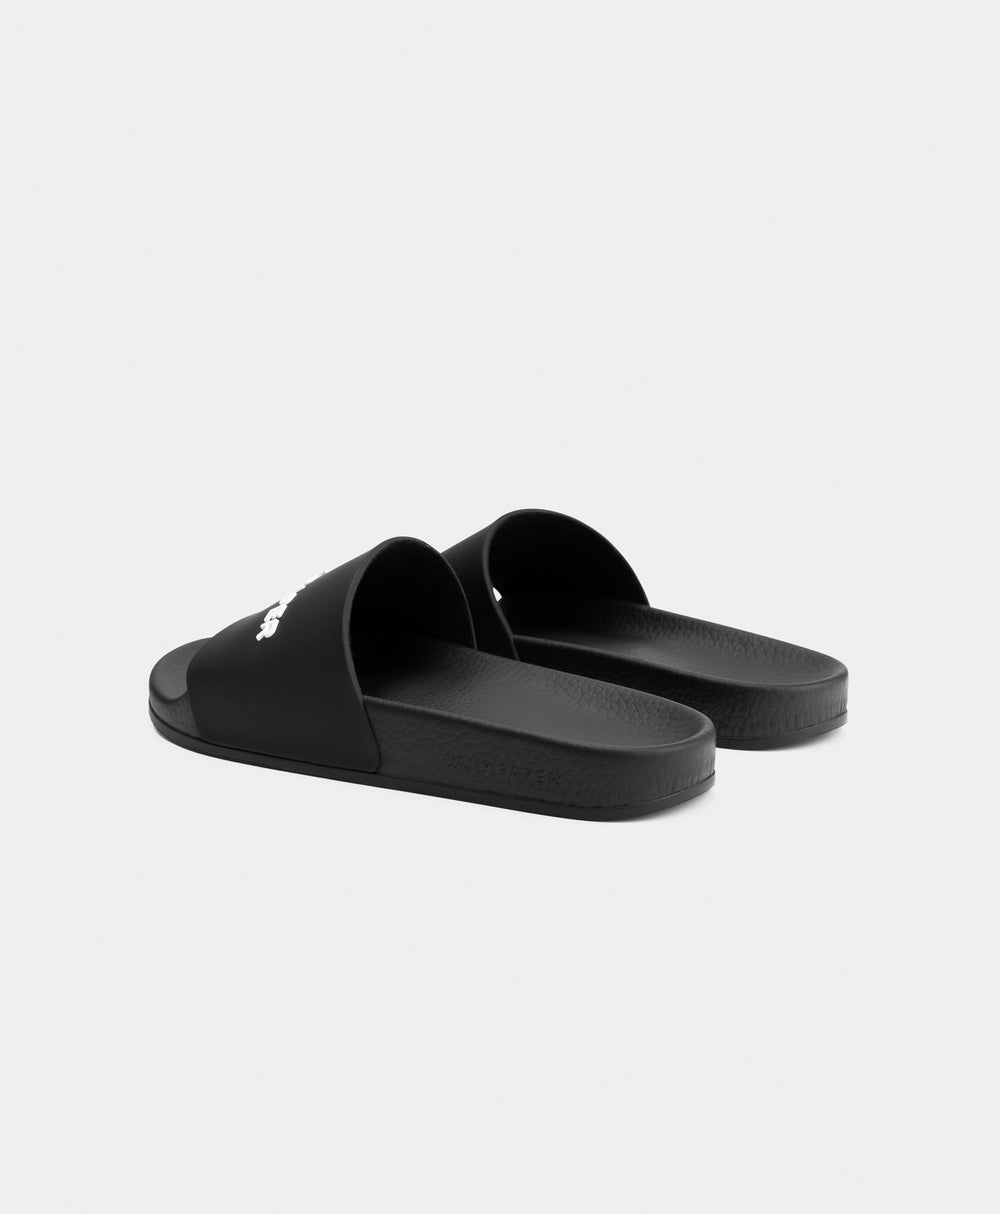 DP - Black Reslider Logo Type Sandals - Packshot - Rear